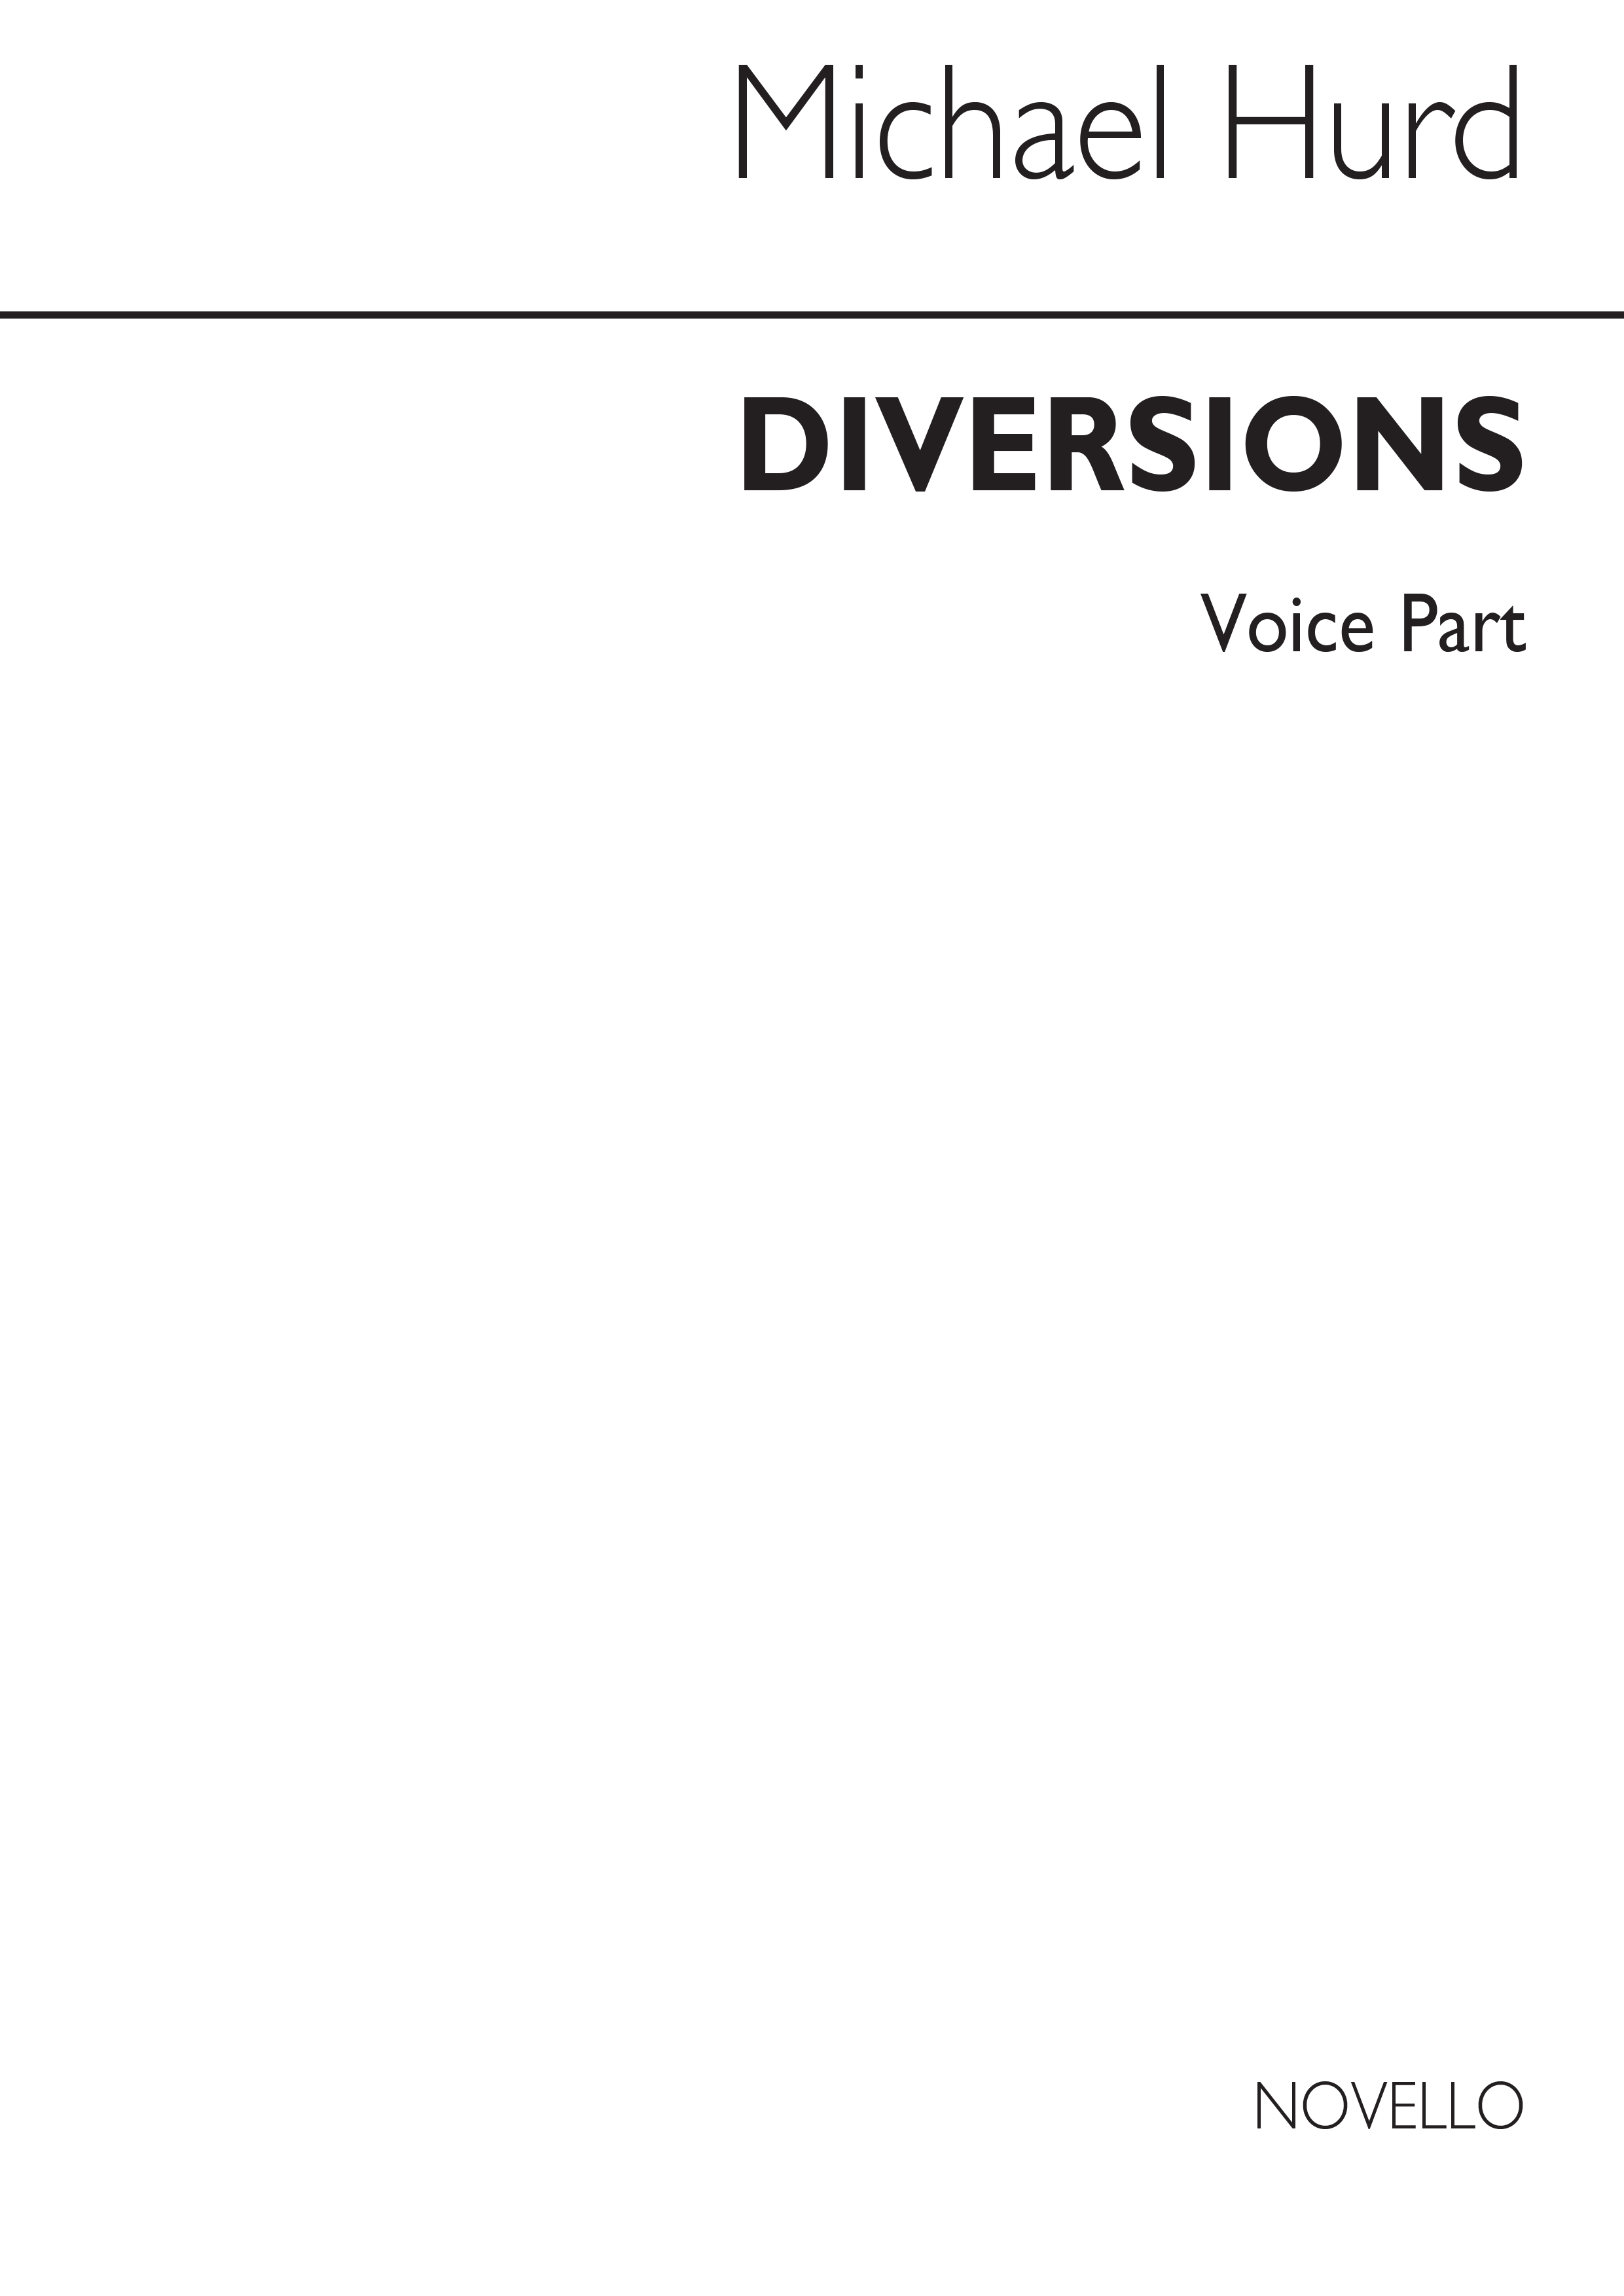 Hurd: Diversions Set 2 No.4 (Voice Part)